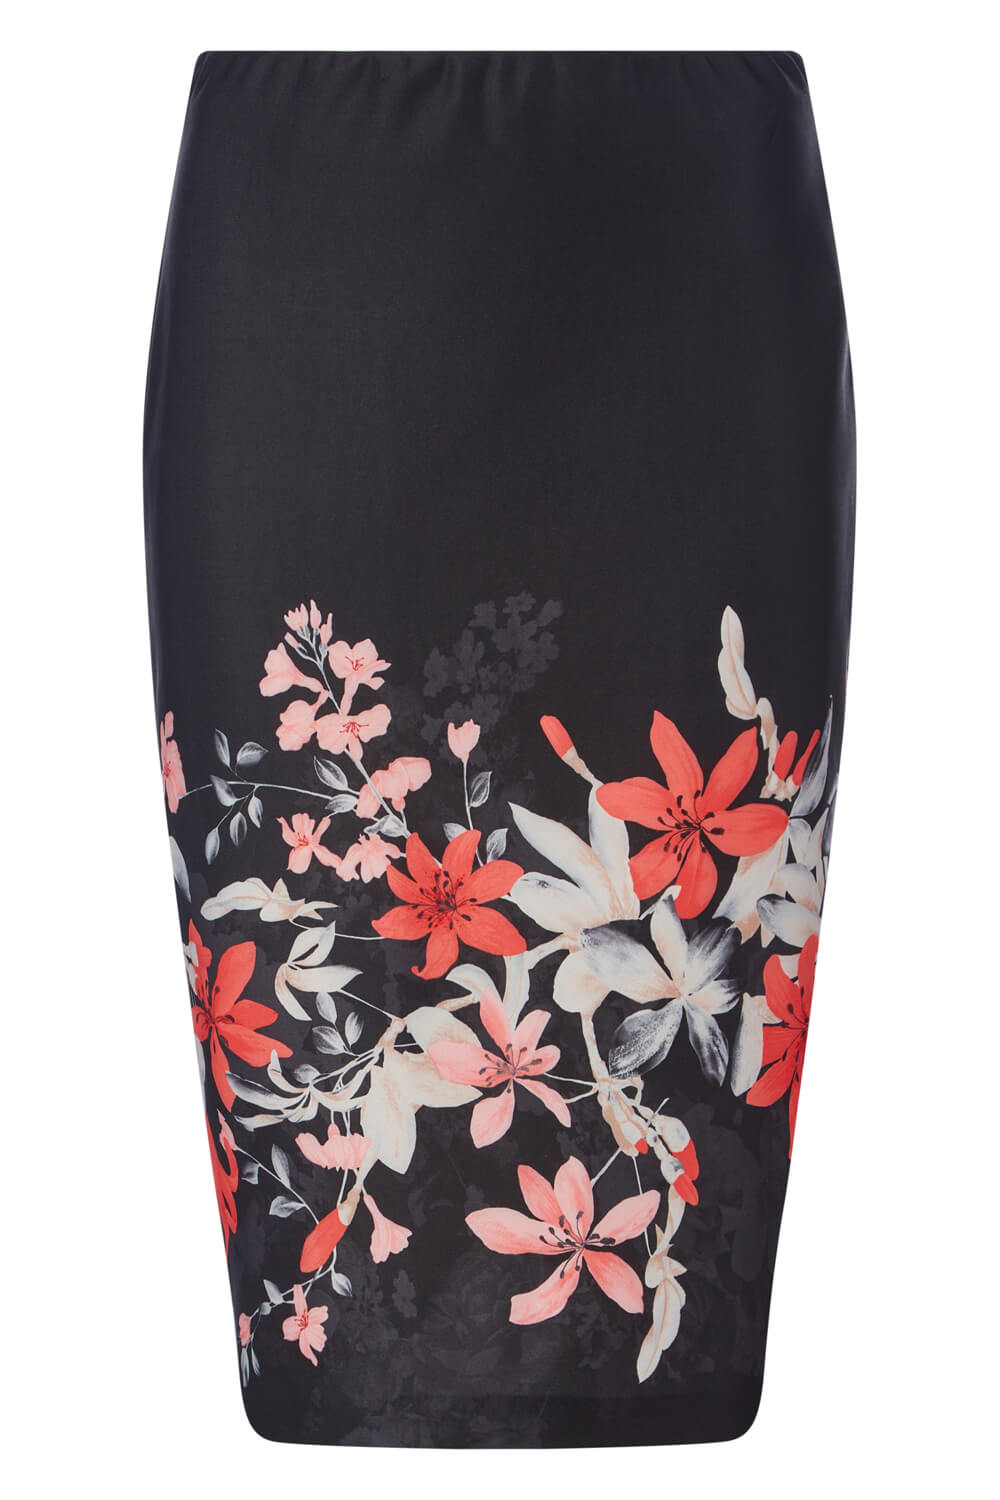 Floral Print Scuba Skirt in Black - Roman Originals UK